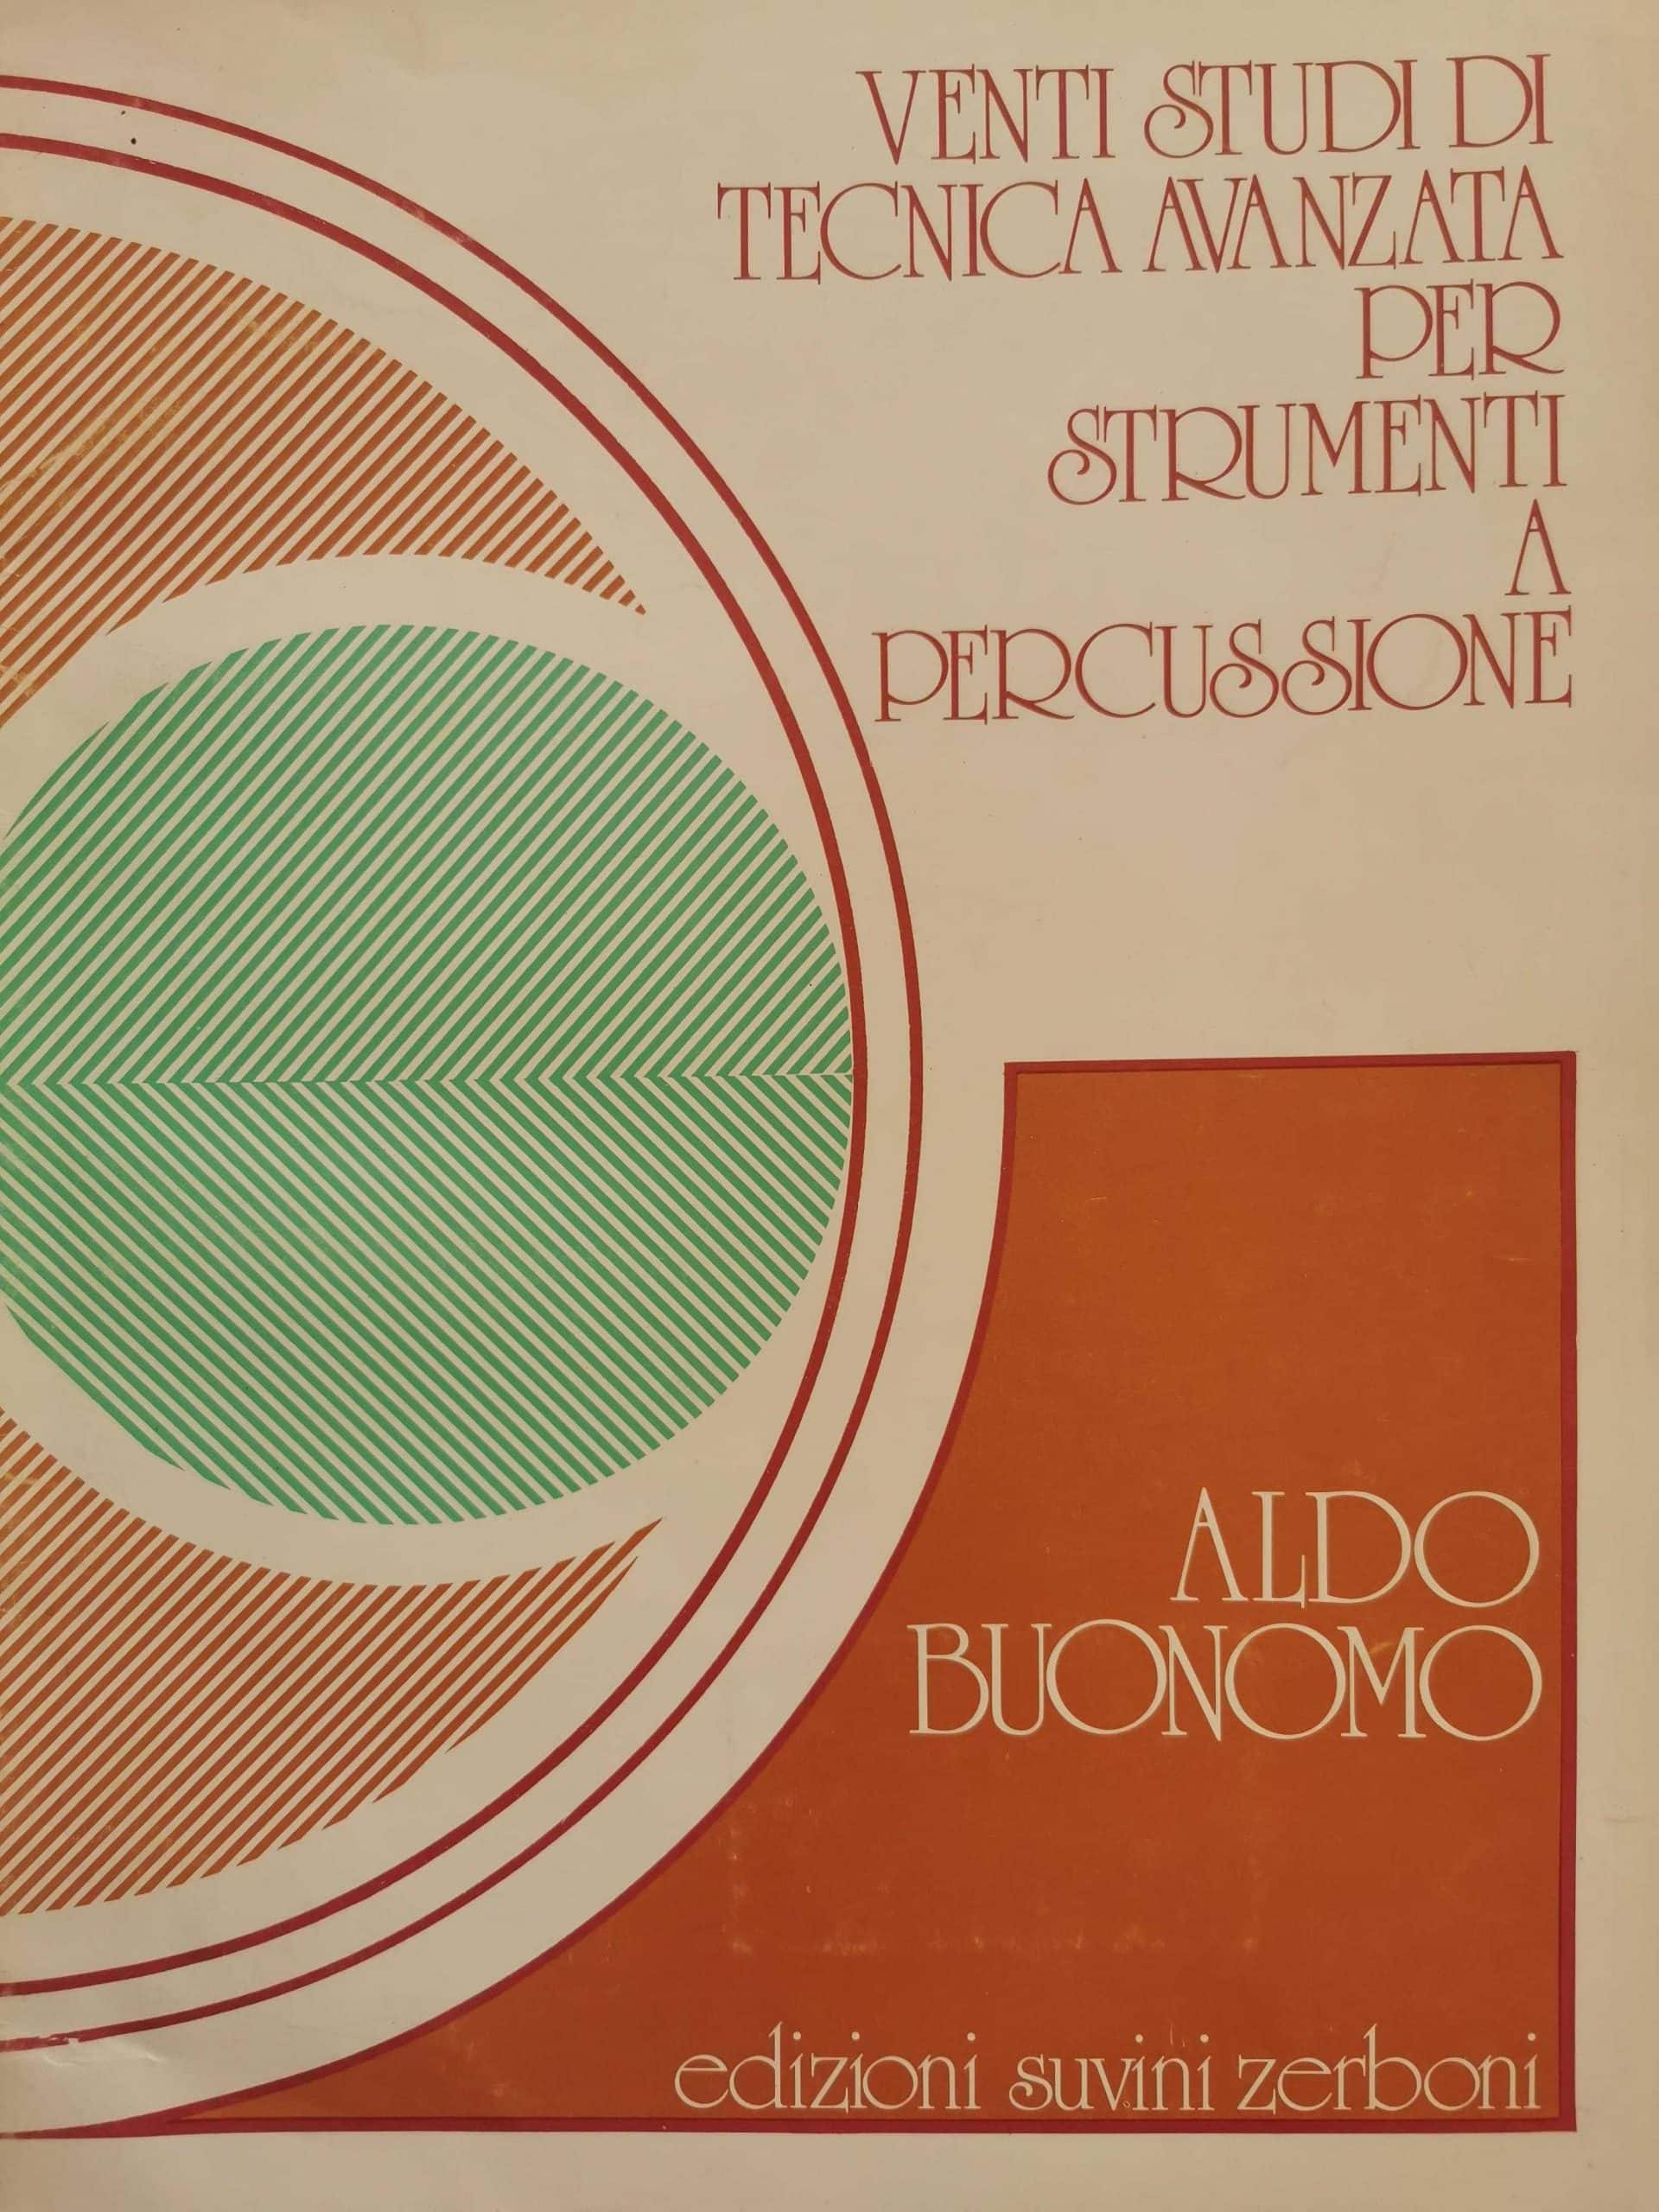 Venti Studi di tecnica avanzata by Aldo Buonomo